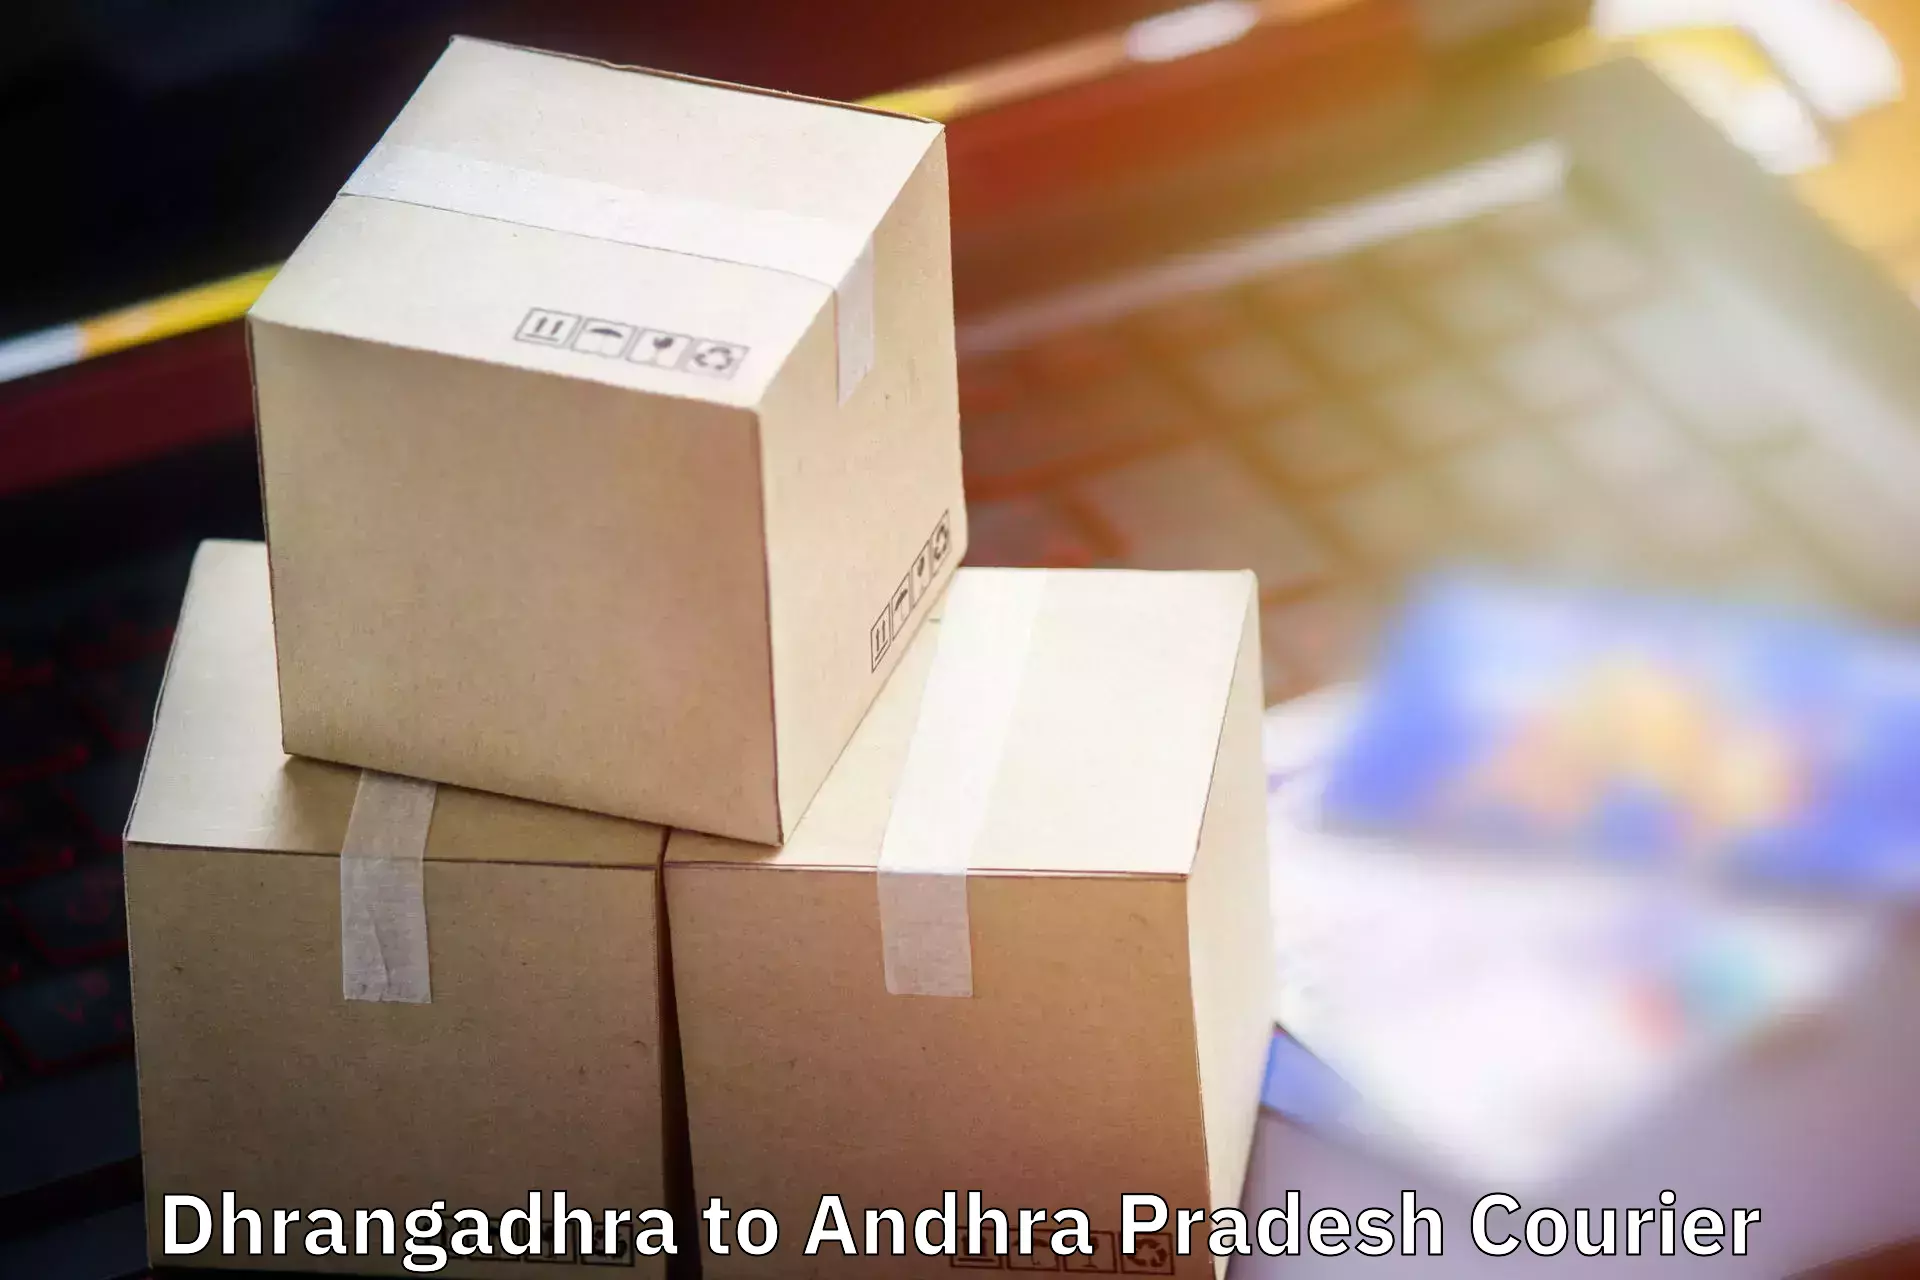 Baggage transport scheduler Dhrangadhra to Addateegala